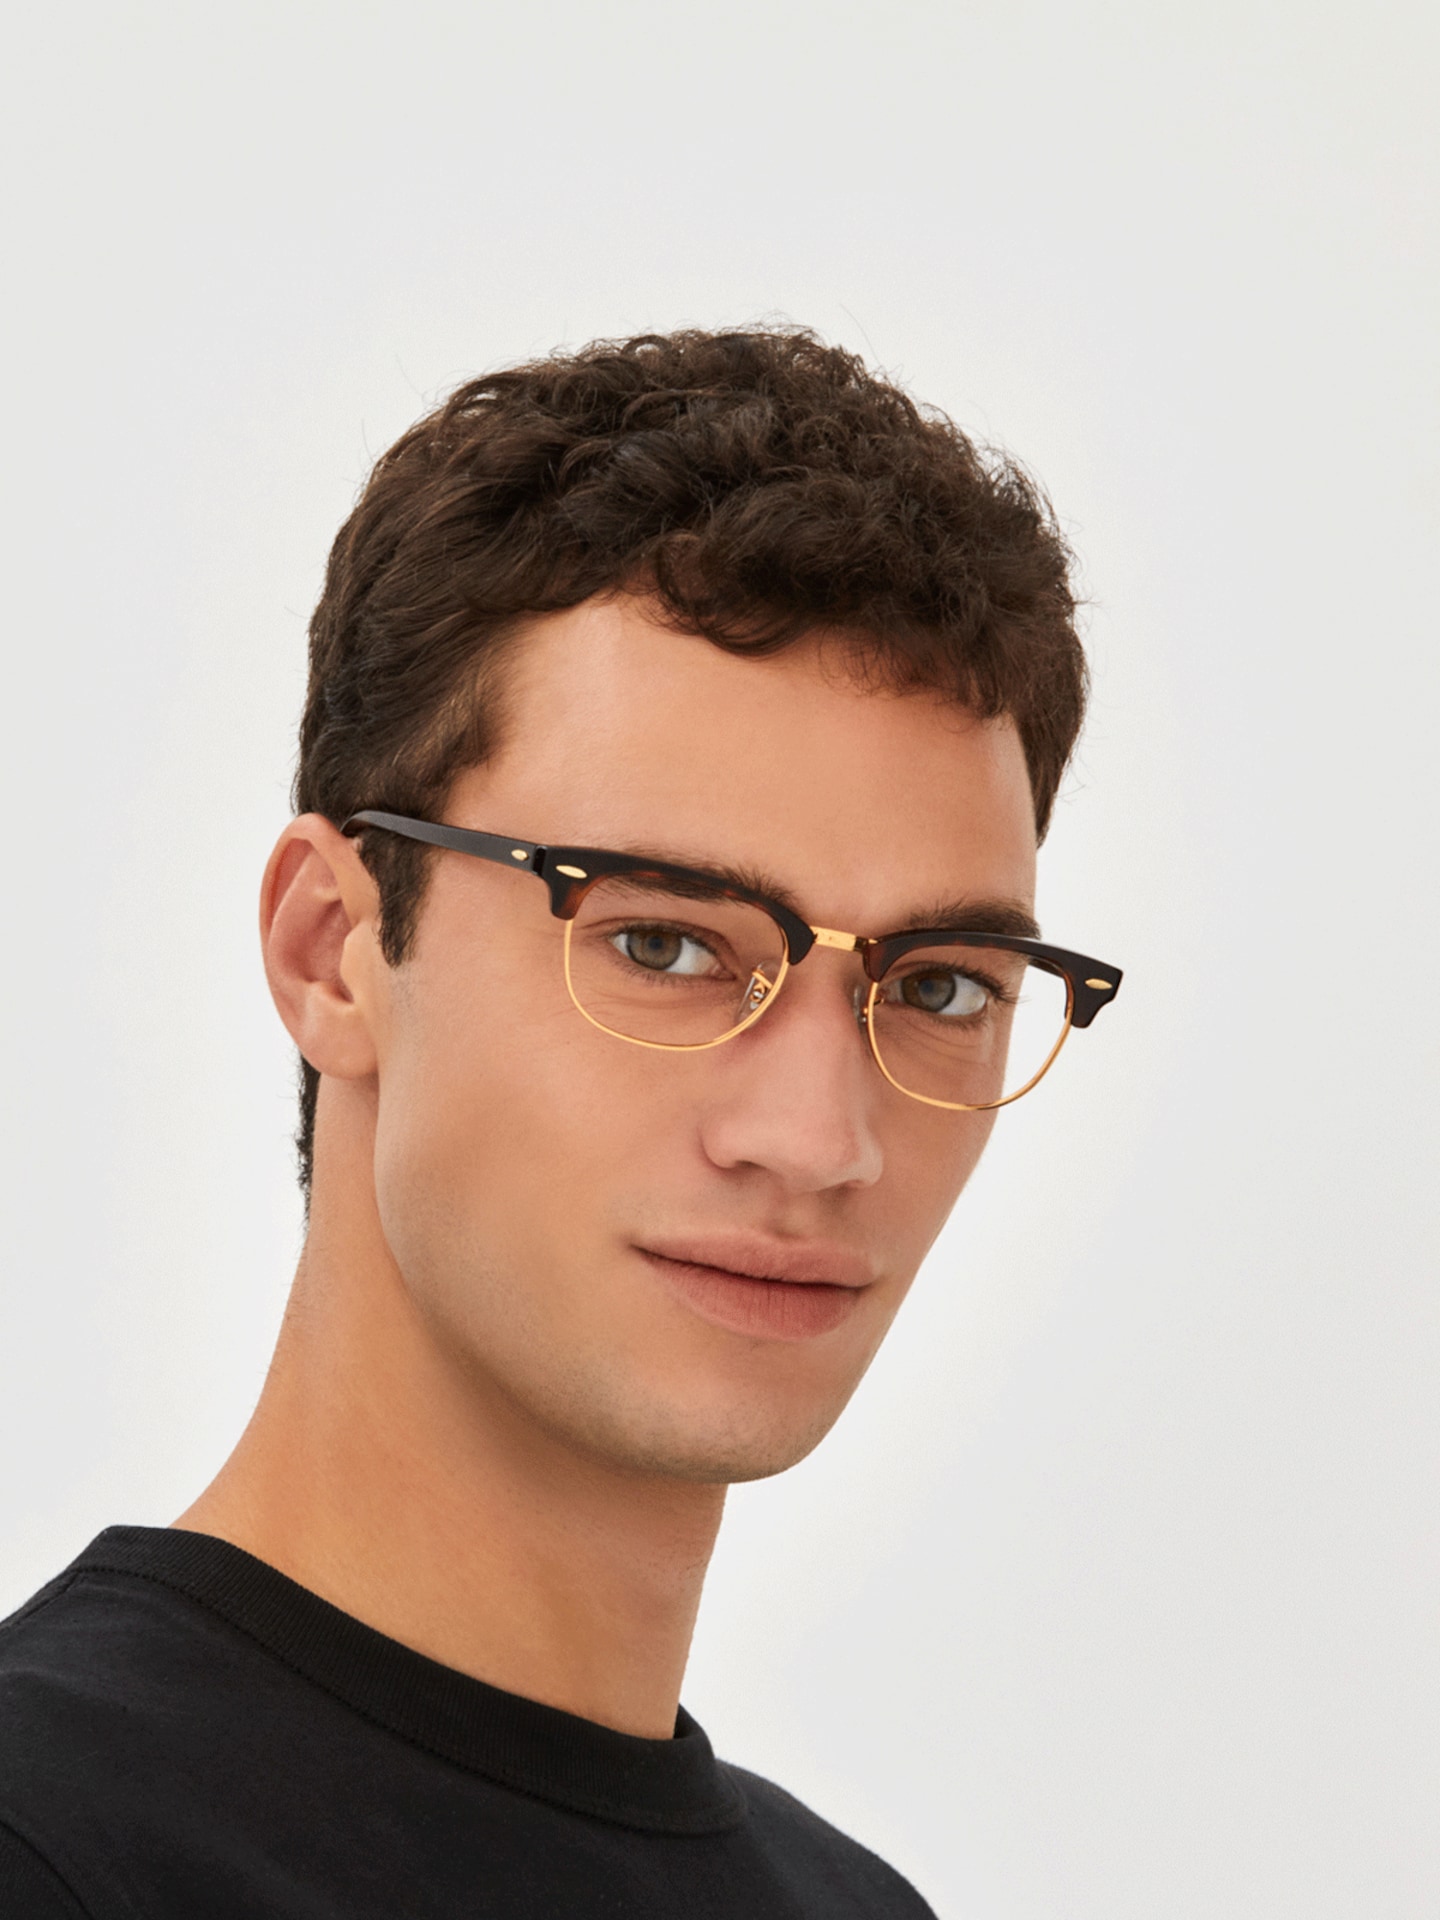 Ray Ban Tortoise Eyeglasses Glasses Com Free Shipping